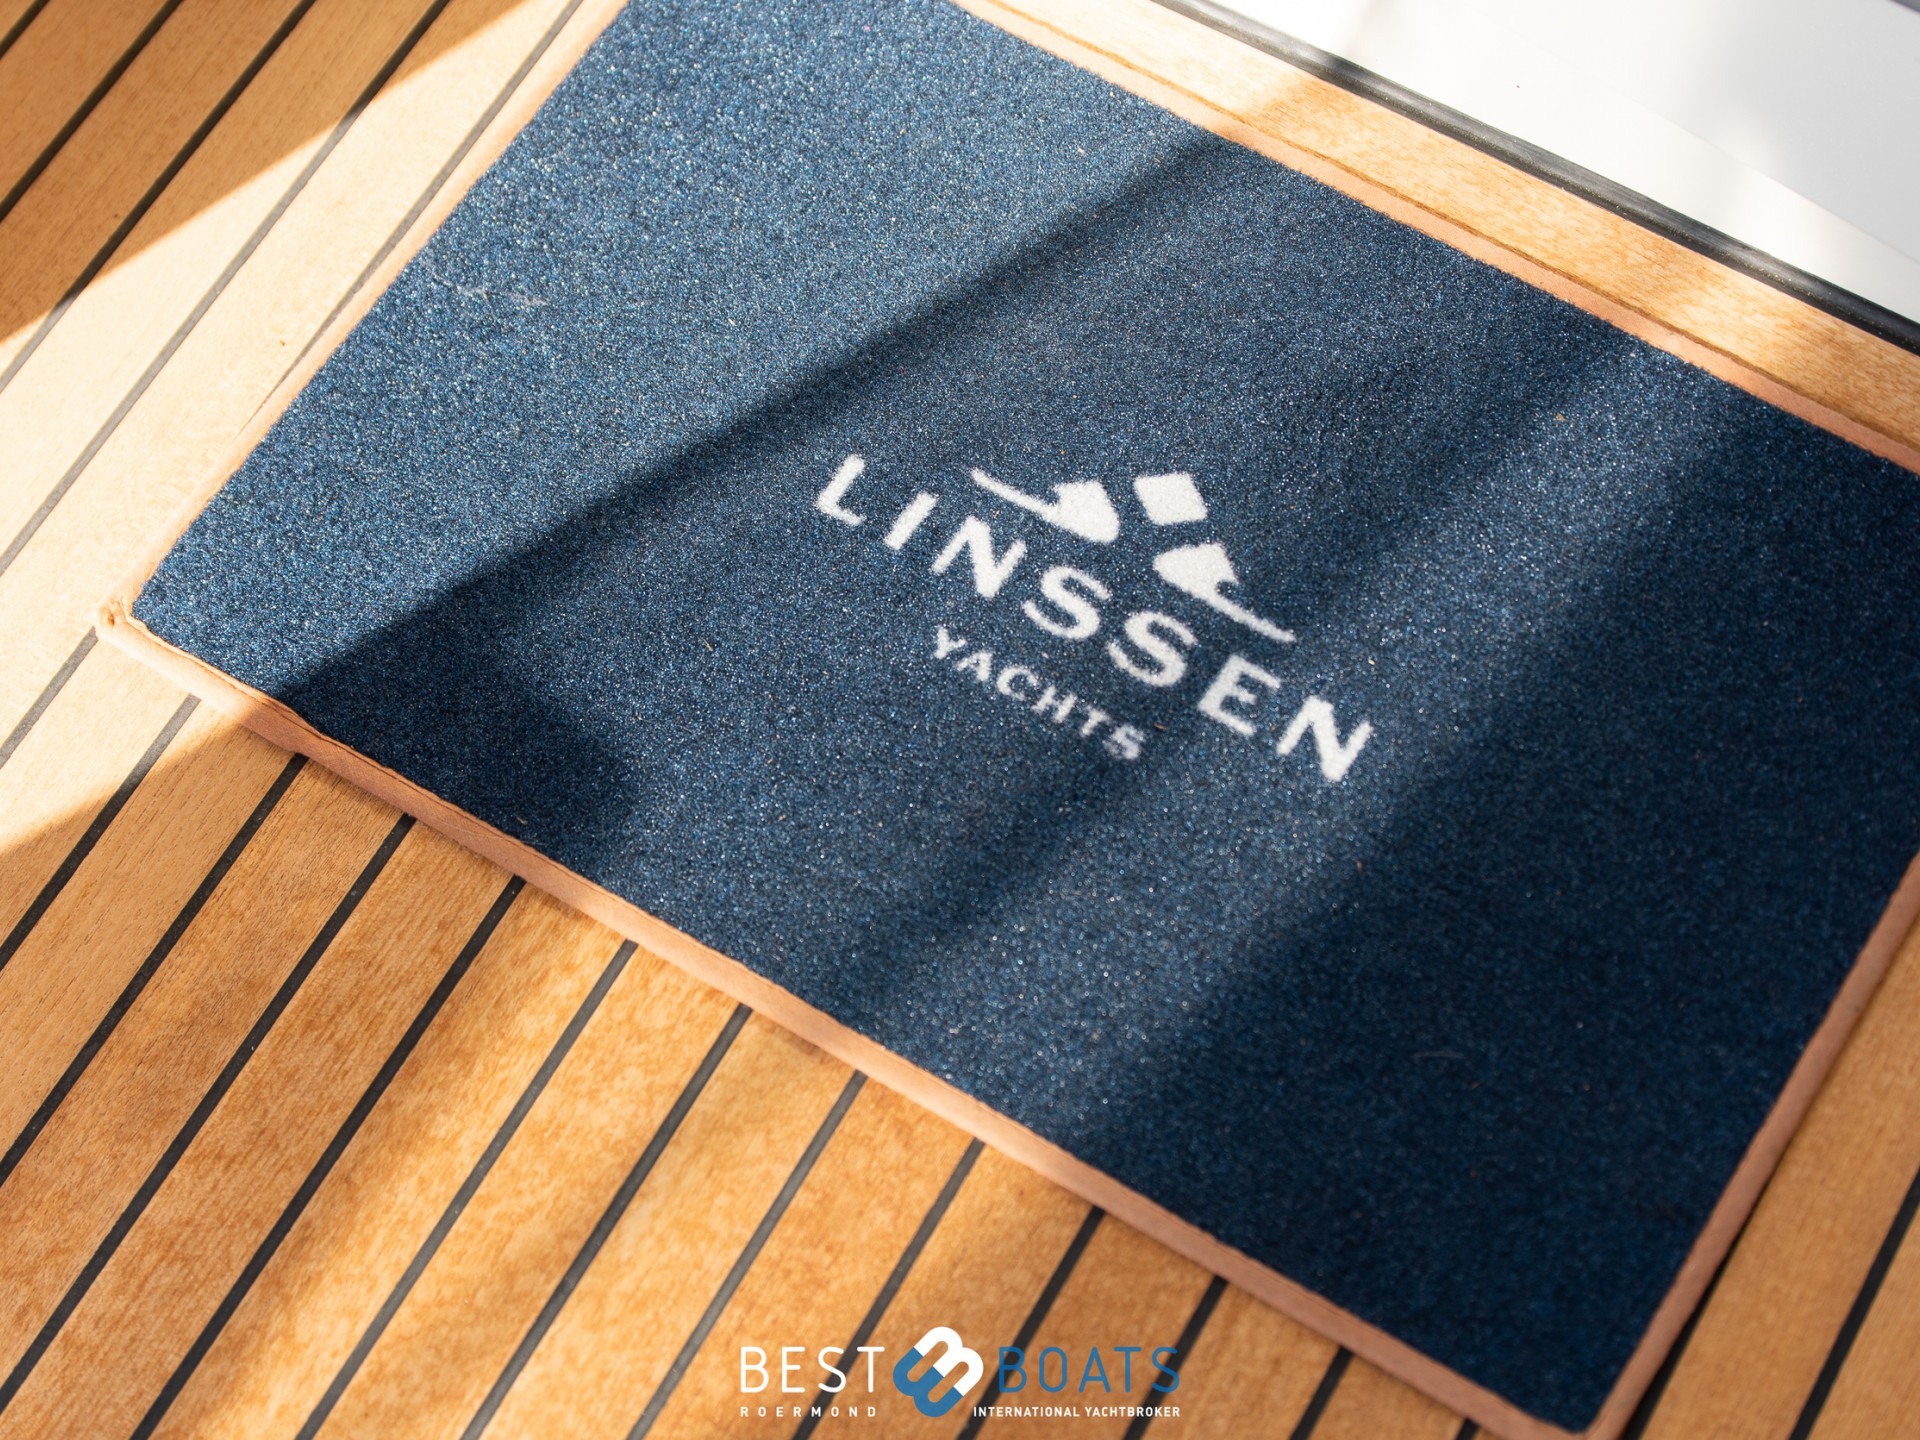 Linssen Grand Sturdy 40.0 AC ( Bouwjaar 2020)